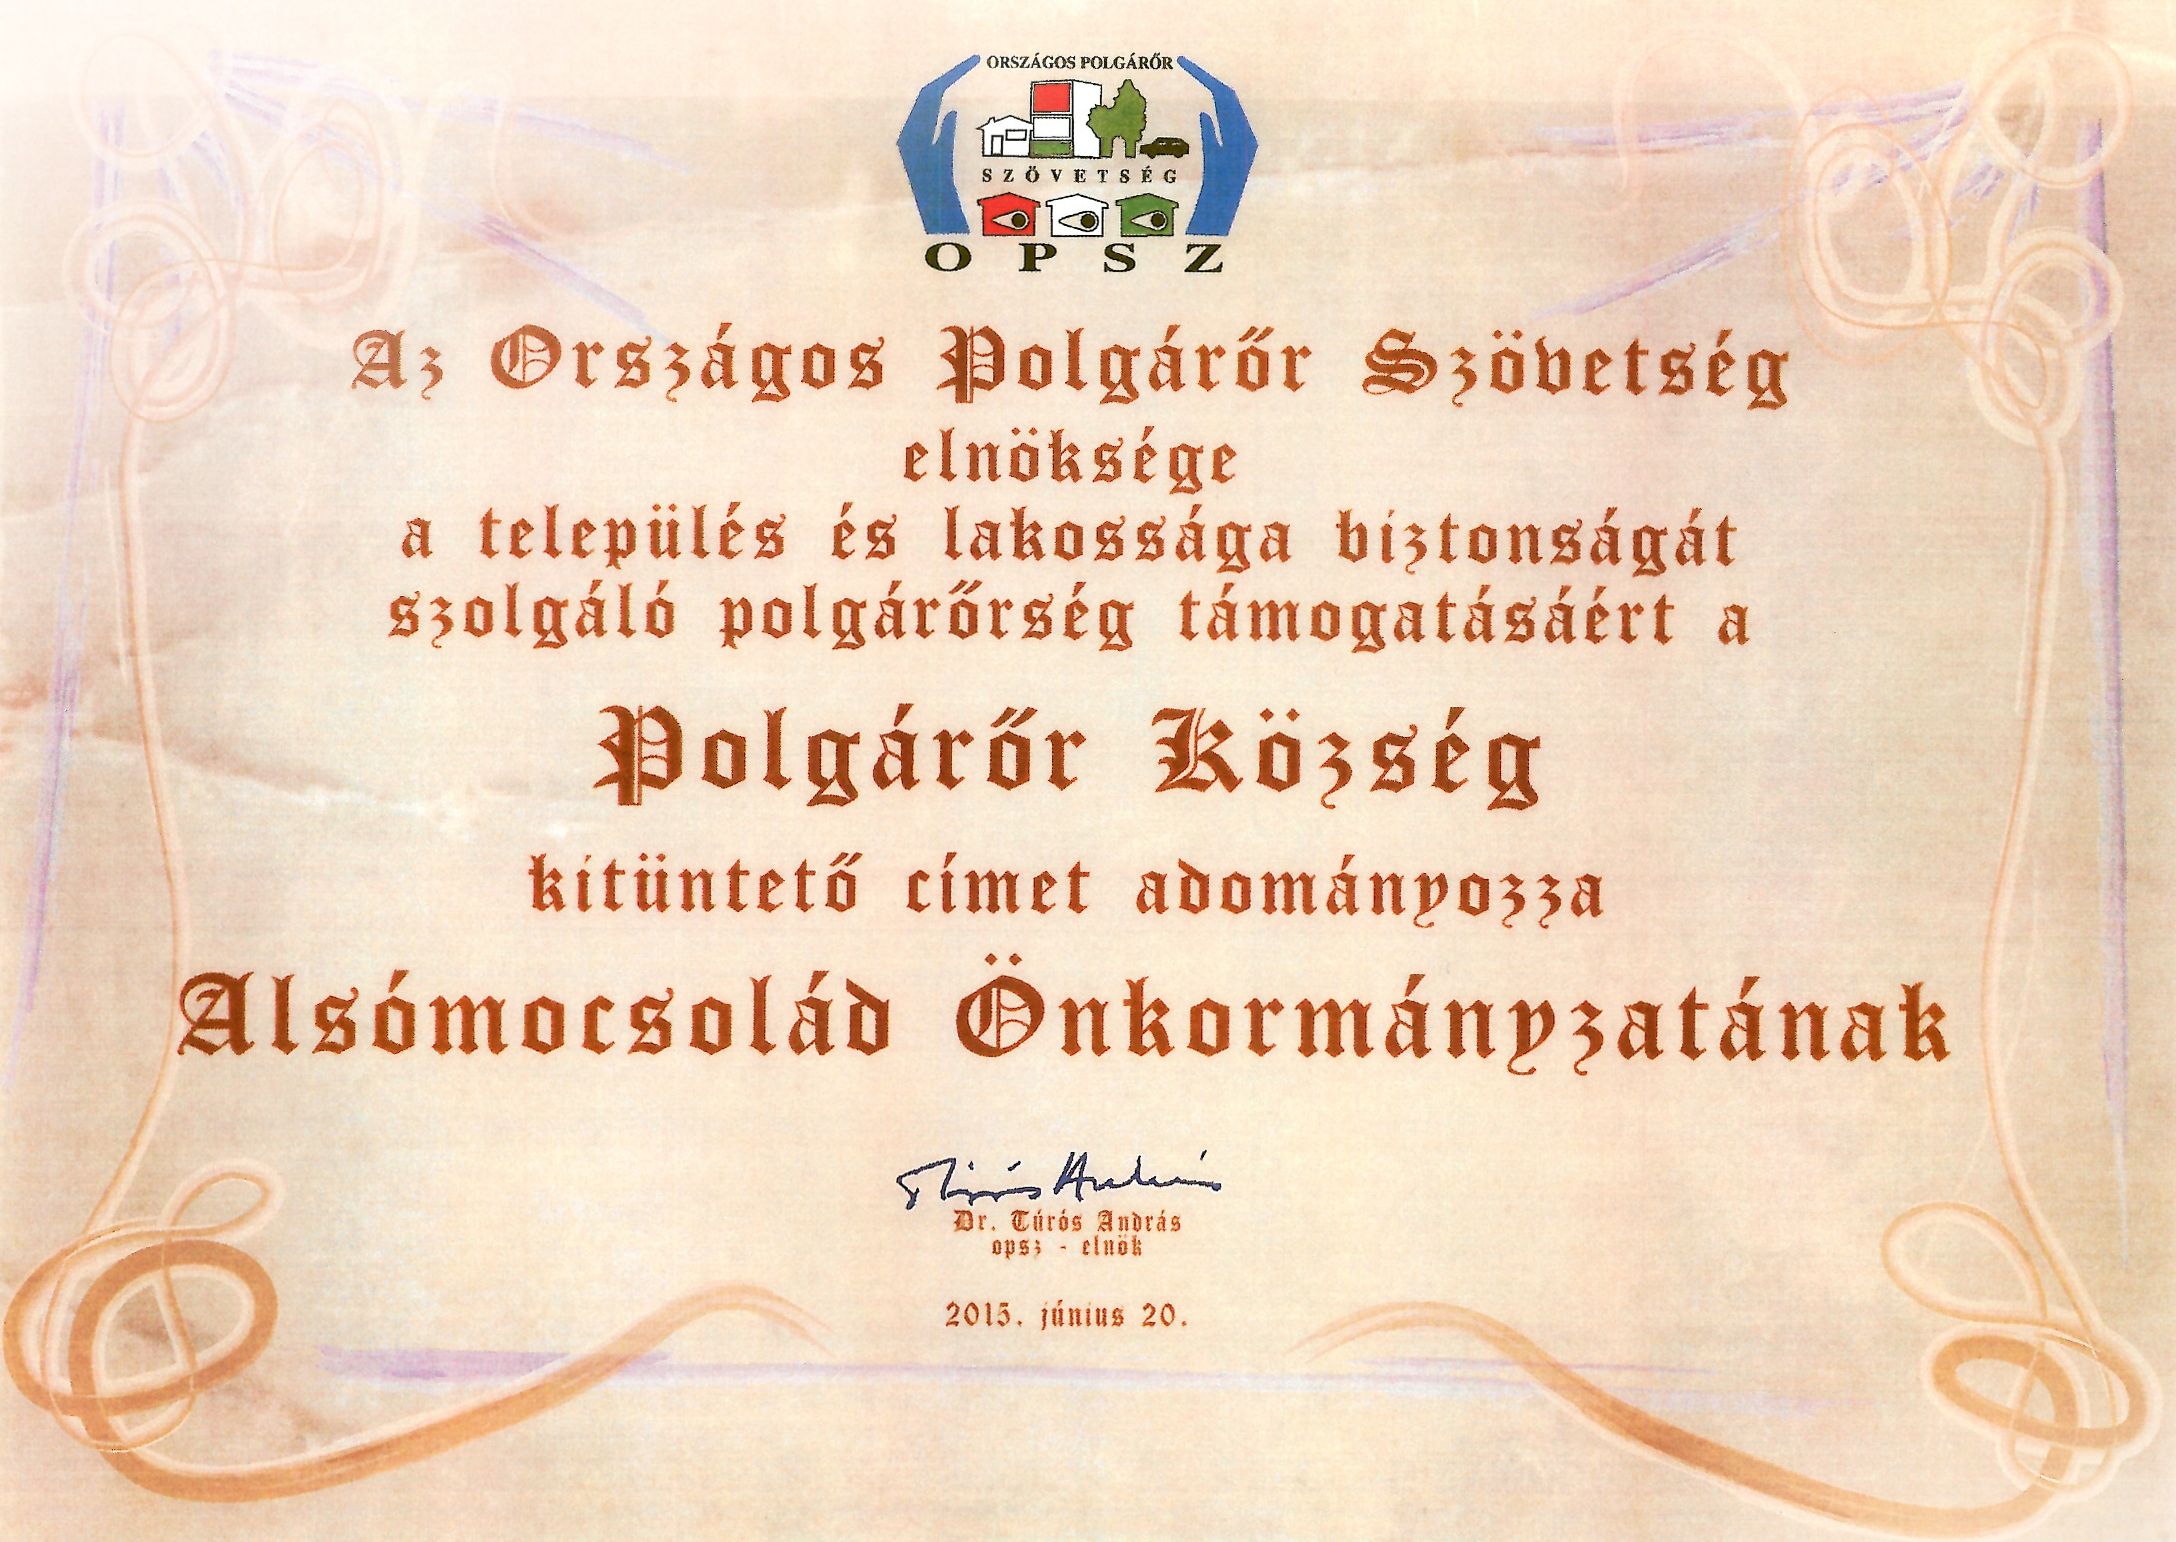 Az Országos Polgárőr Szövetség elnöksége a település és lakossága biztonságát szolgáló polgárőrség támogatásáért a Polgárőr Község kitüntető címet adományozza Alsómocsolád Önkormányzatának 2013. június 20.